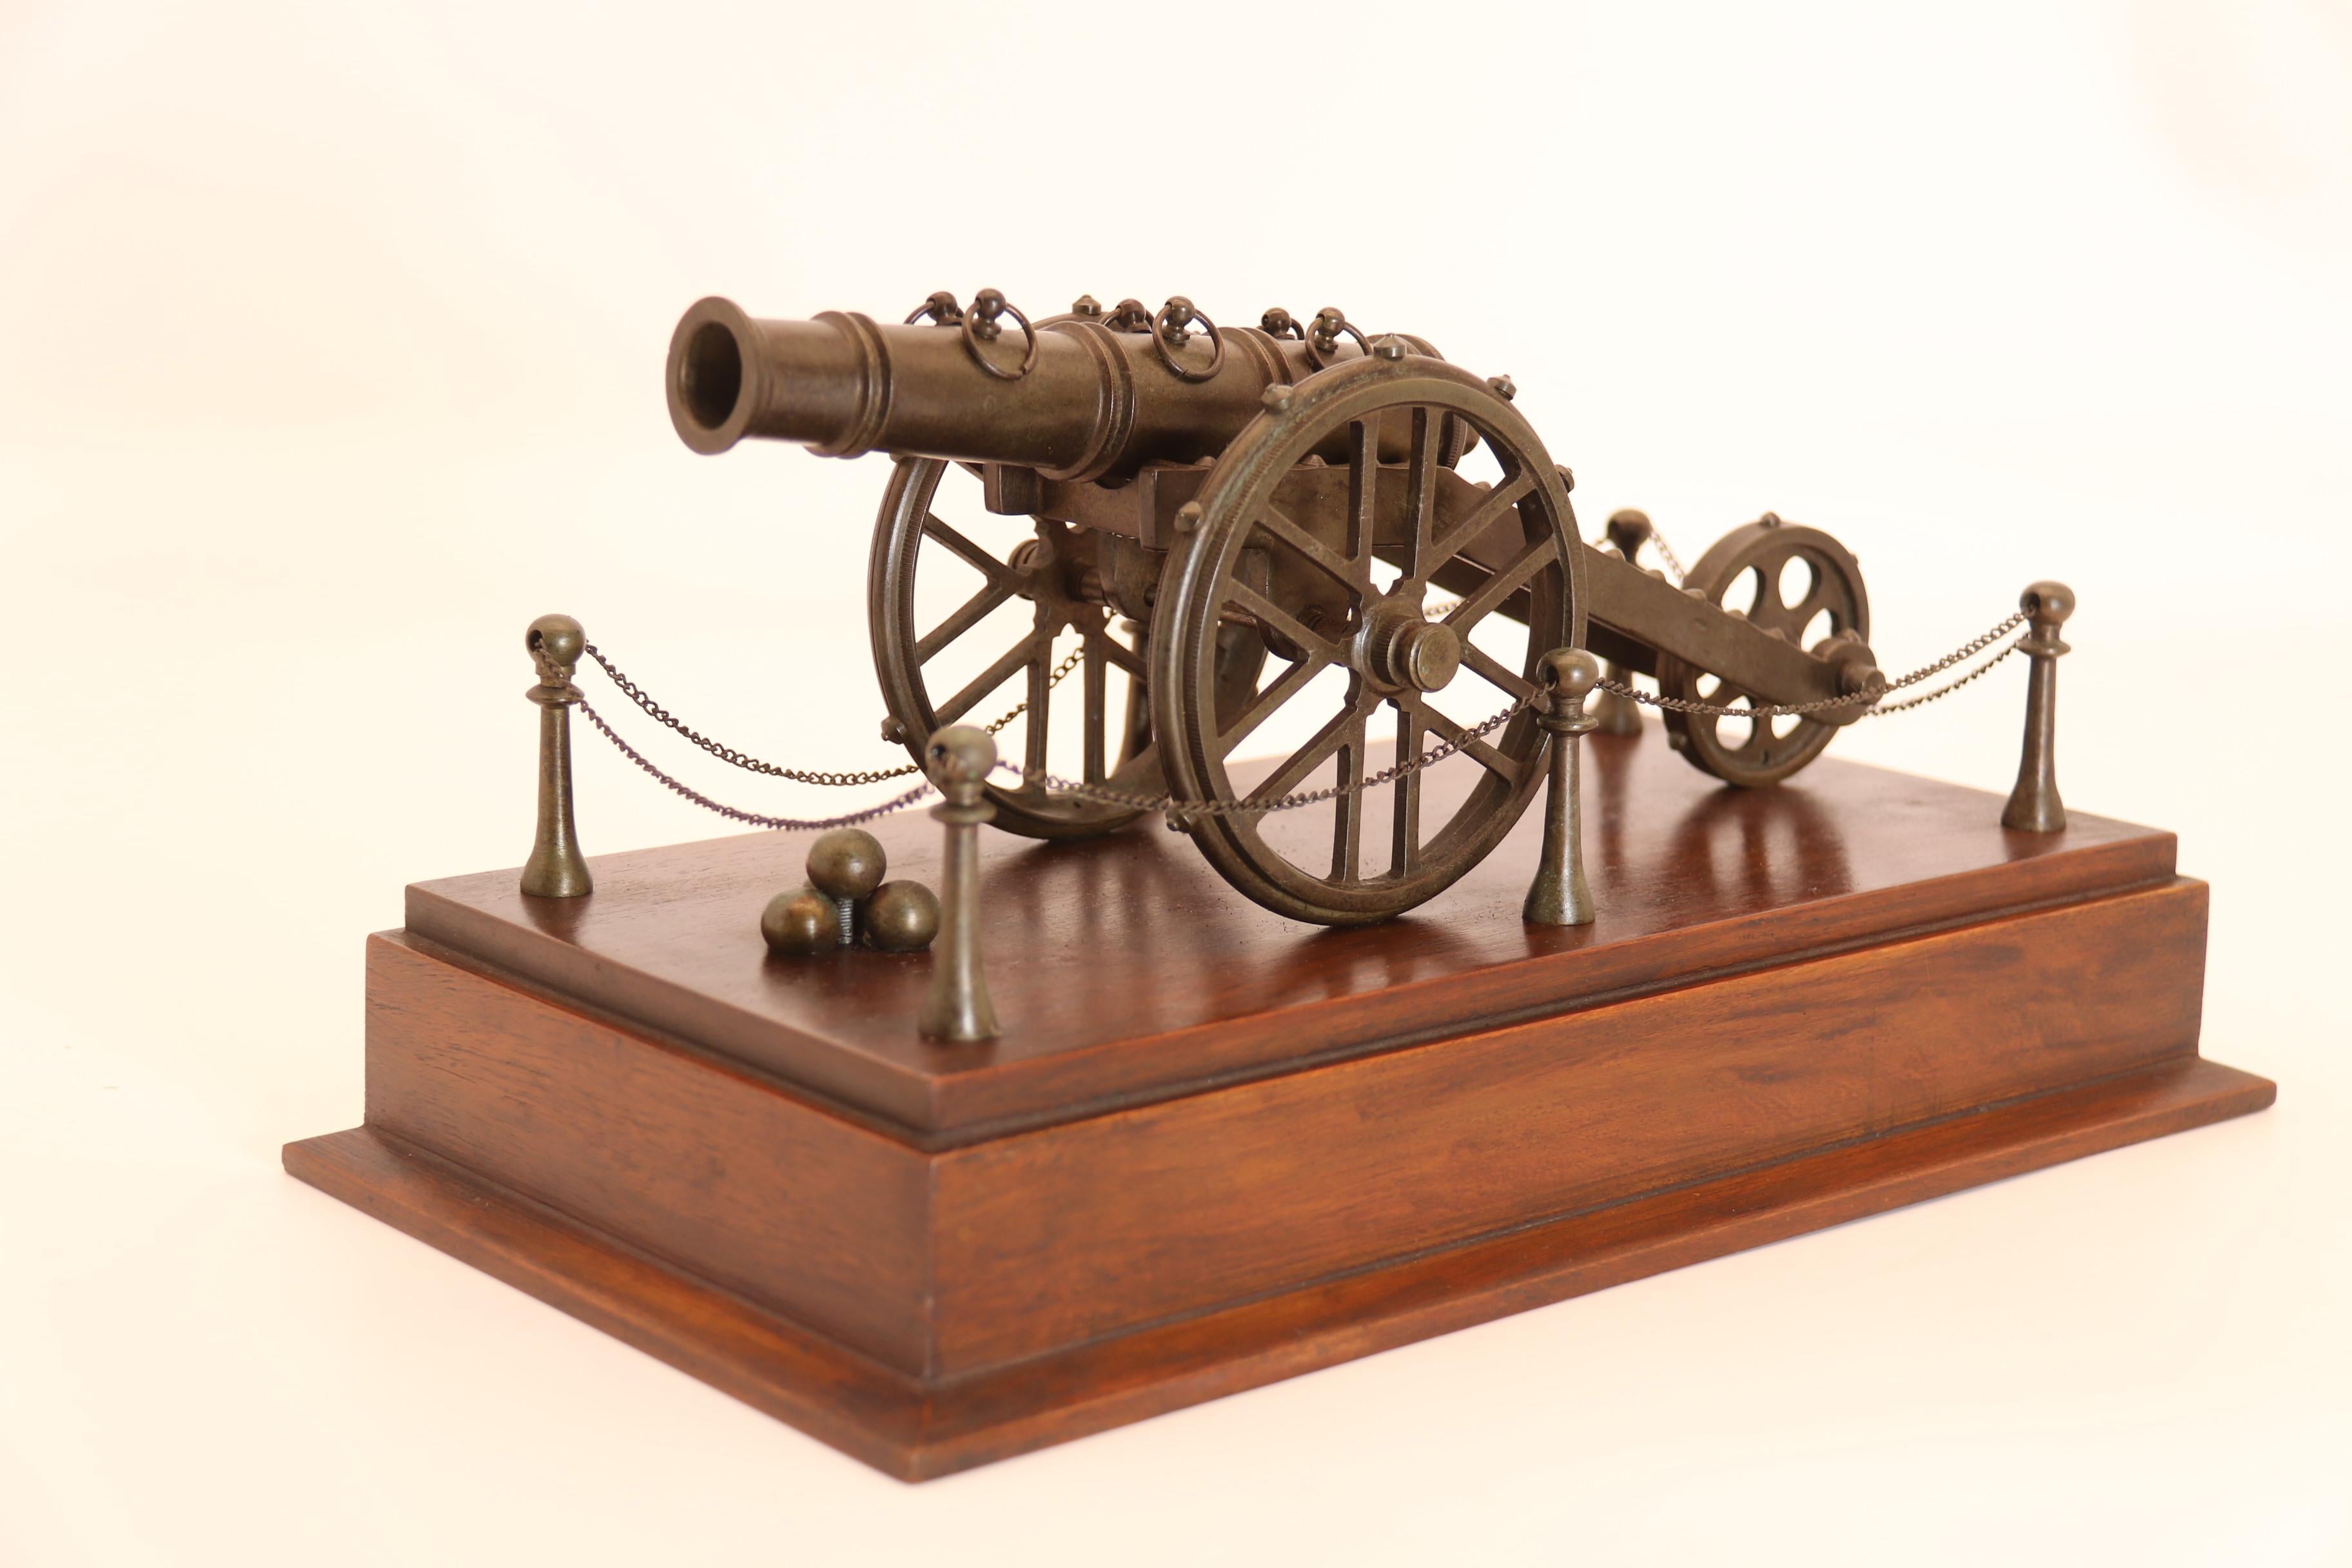 Ce superbe modèle finement détaillé d'un canon du 18e siècle est très bien conçu. Il est équipé de grandes roues à rayons distinctives à l'avant, avec des clous sur le pourtour de la jante extérieure, et d'une version arrière similaire de petite